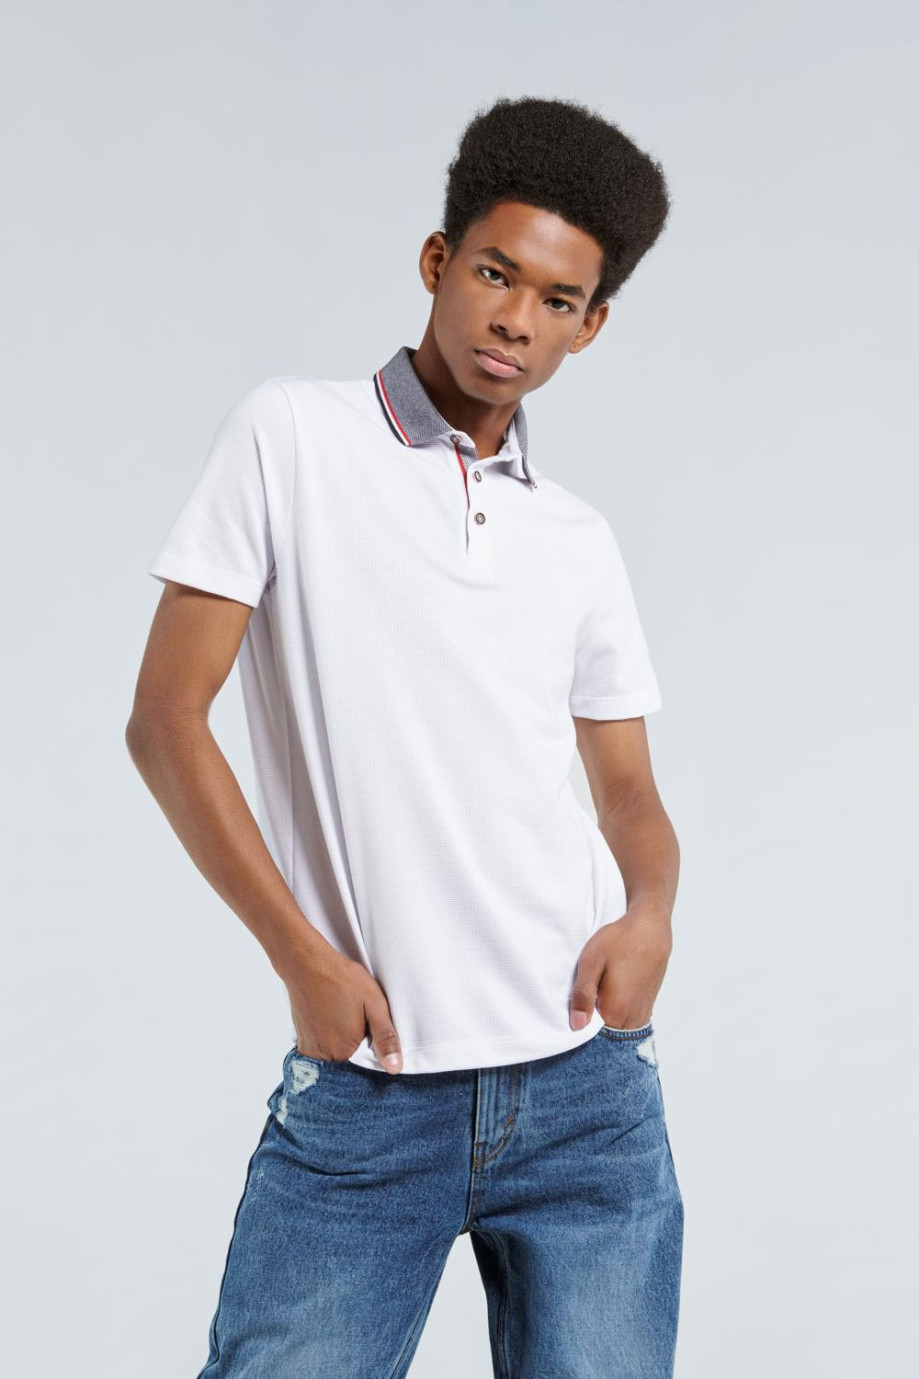 Camiseta polo blanca con cuello en contraste y manga corta